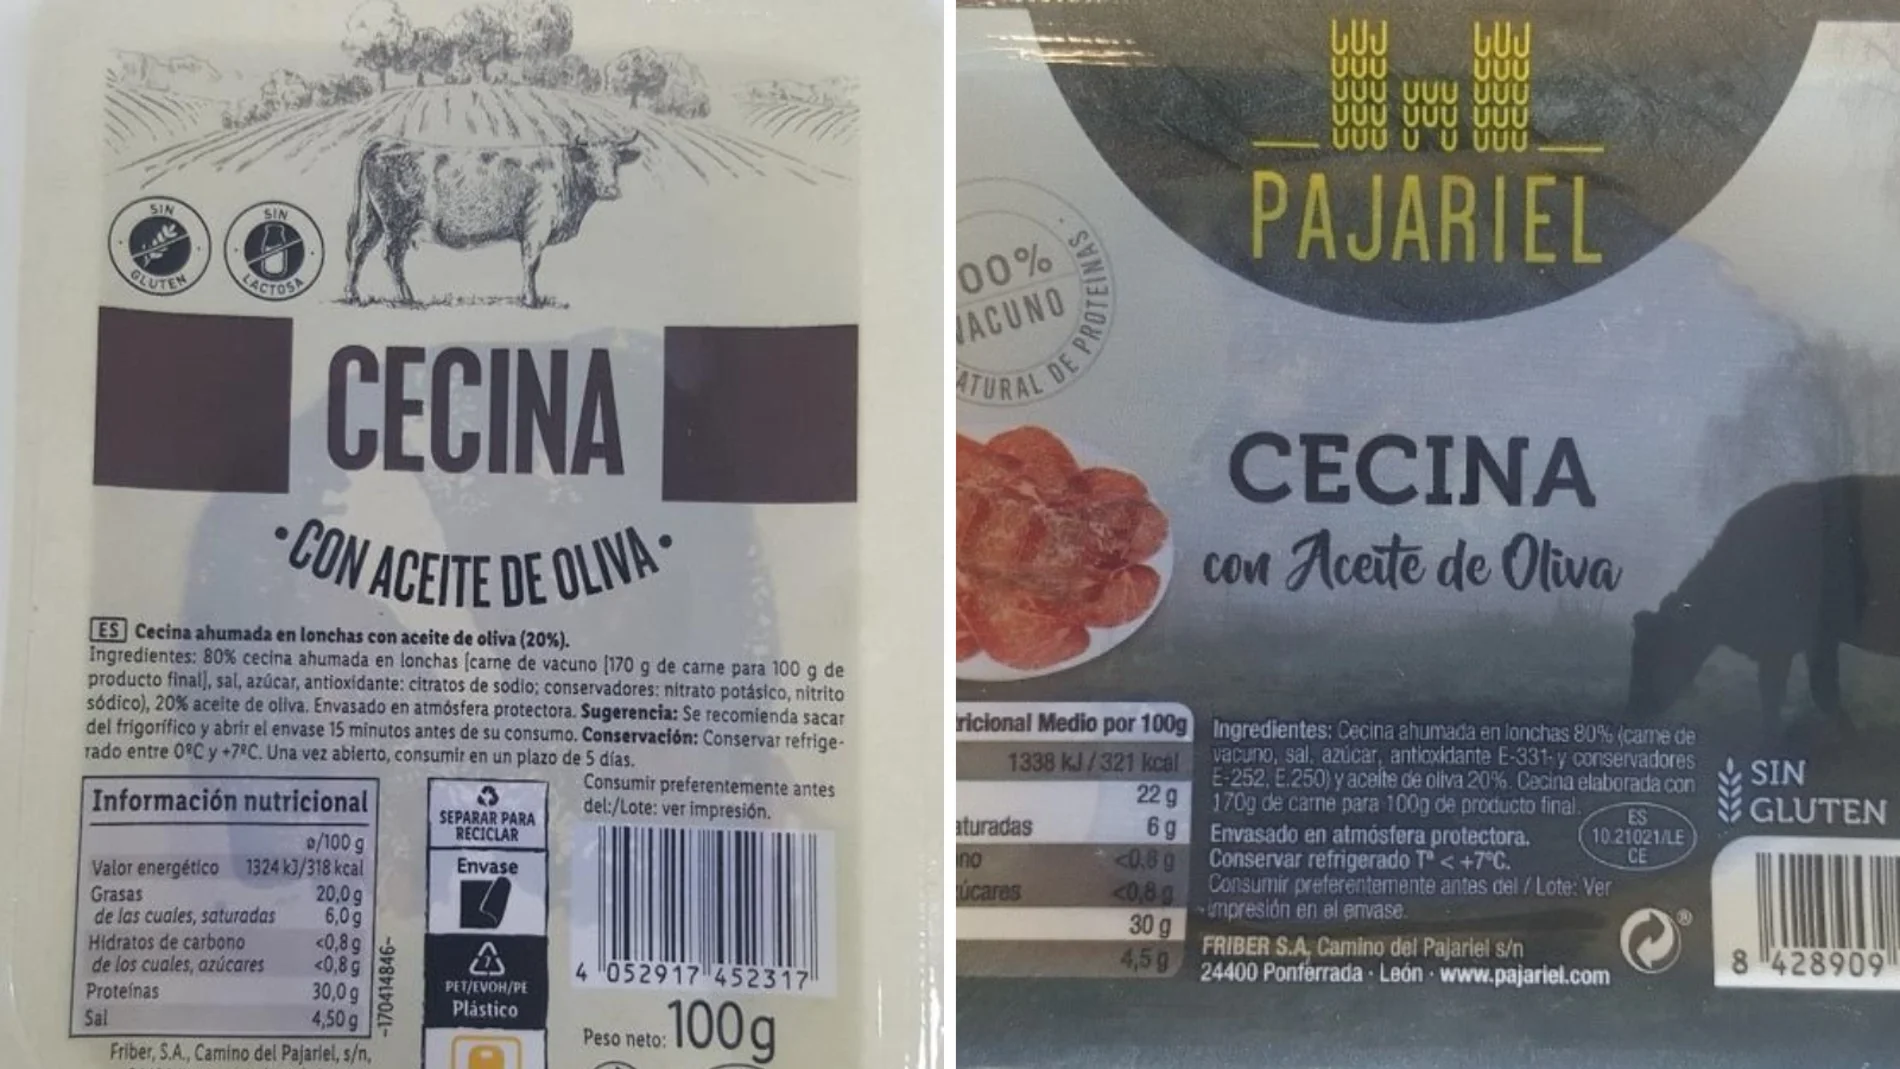 Alerta alimentaria por listeria en unos paquetes de cecina en aceite de oliva vendidos en supermercado